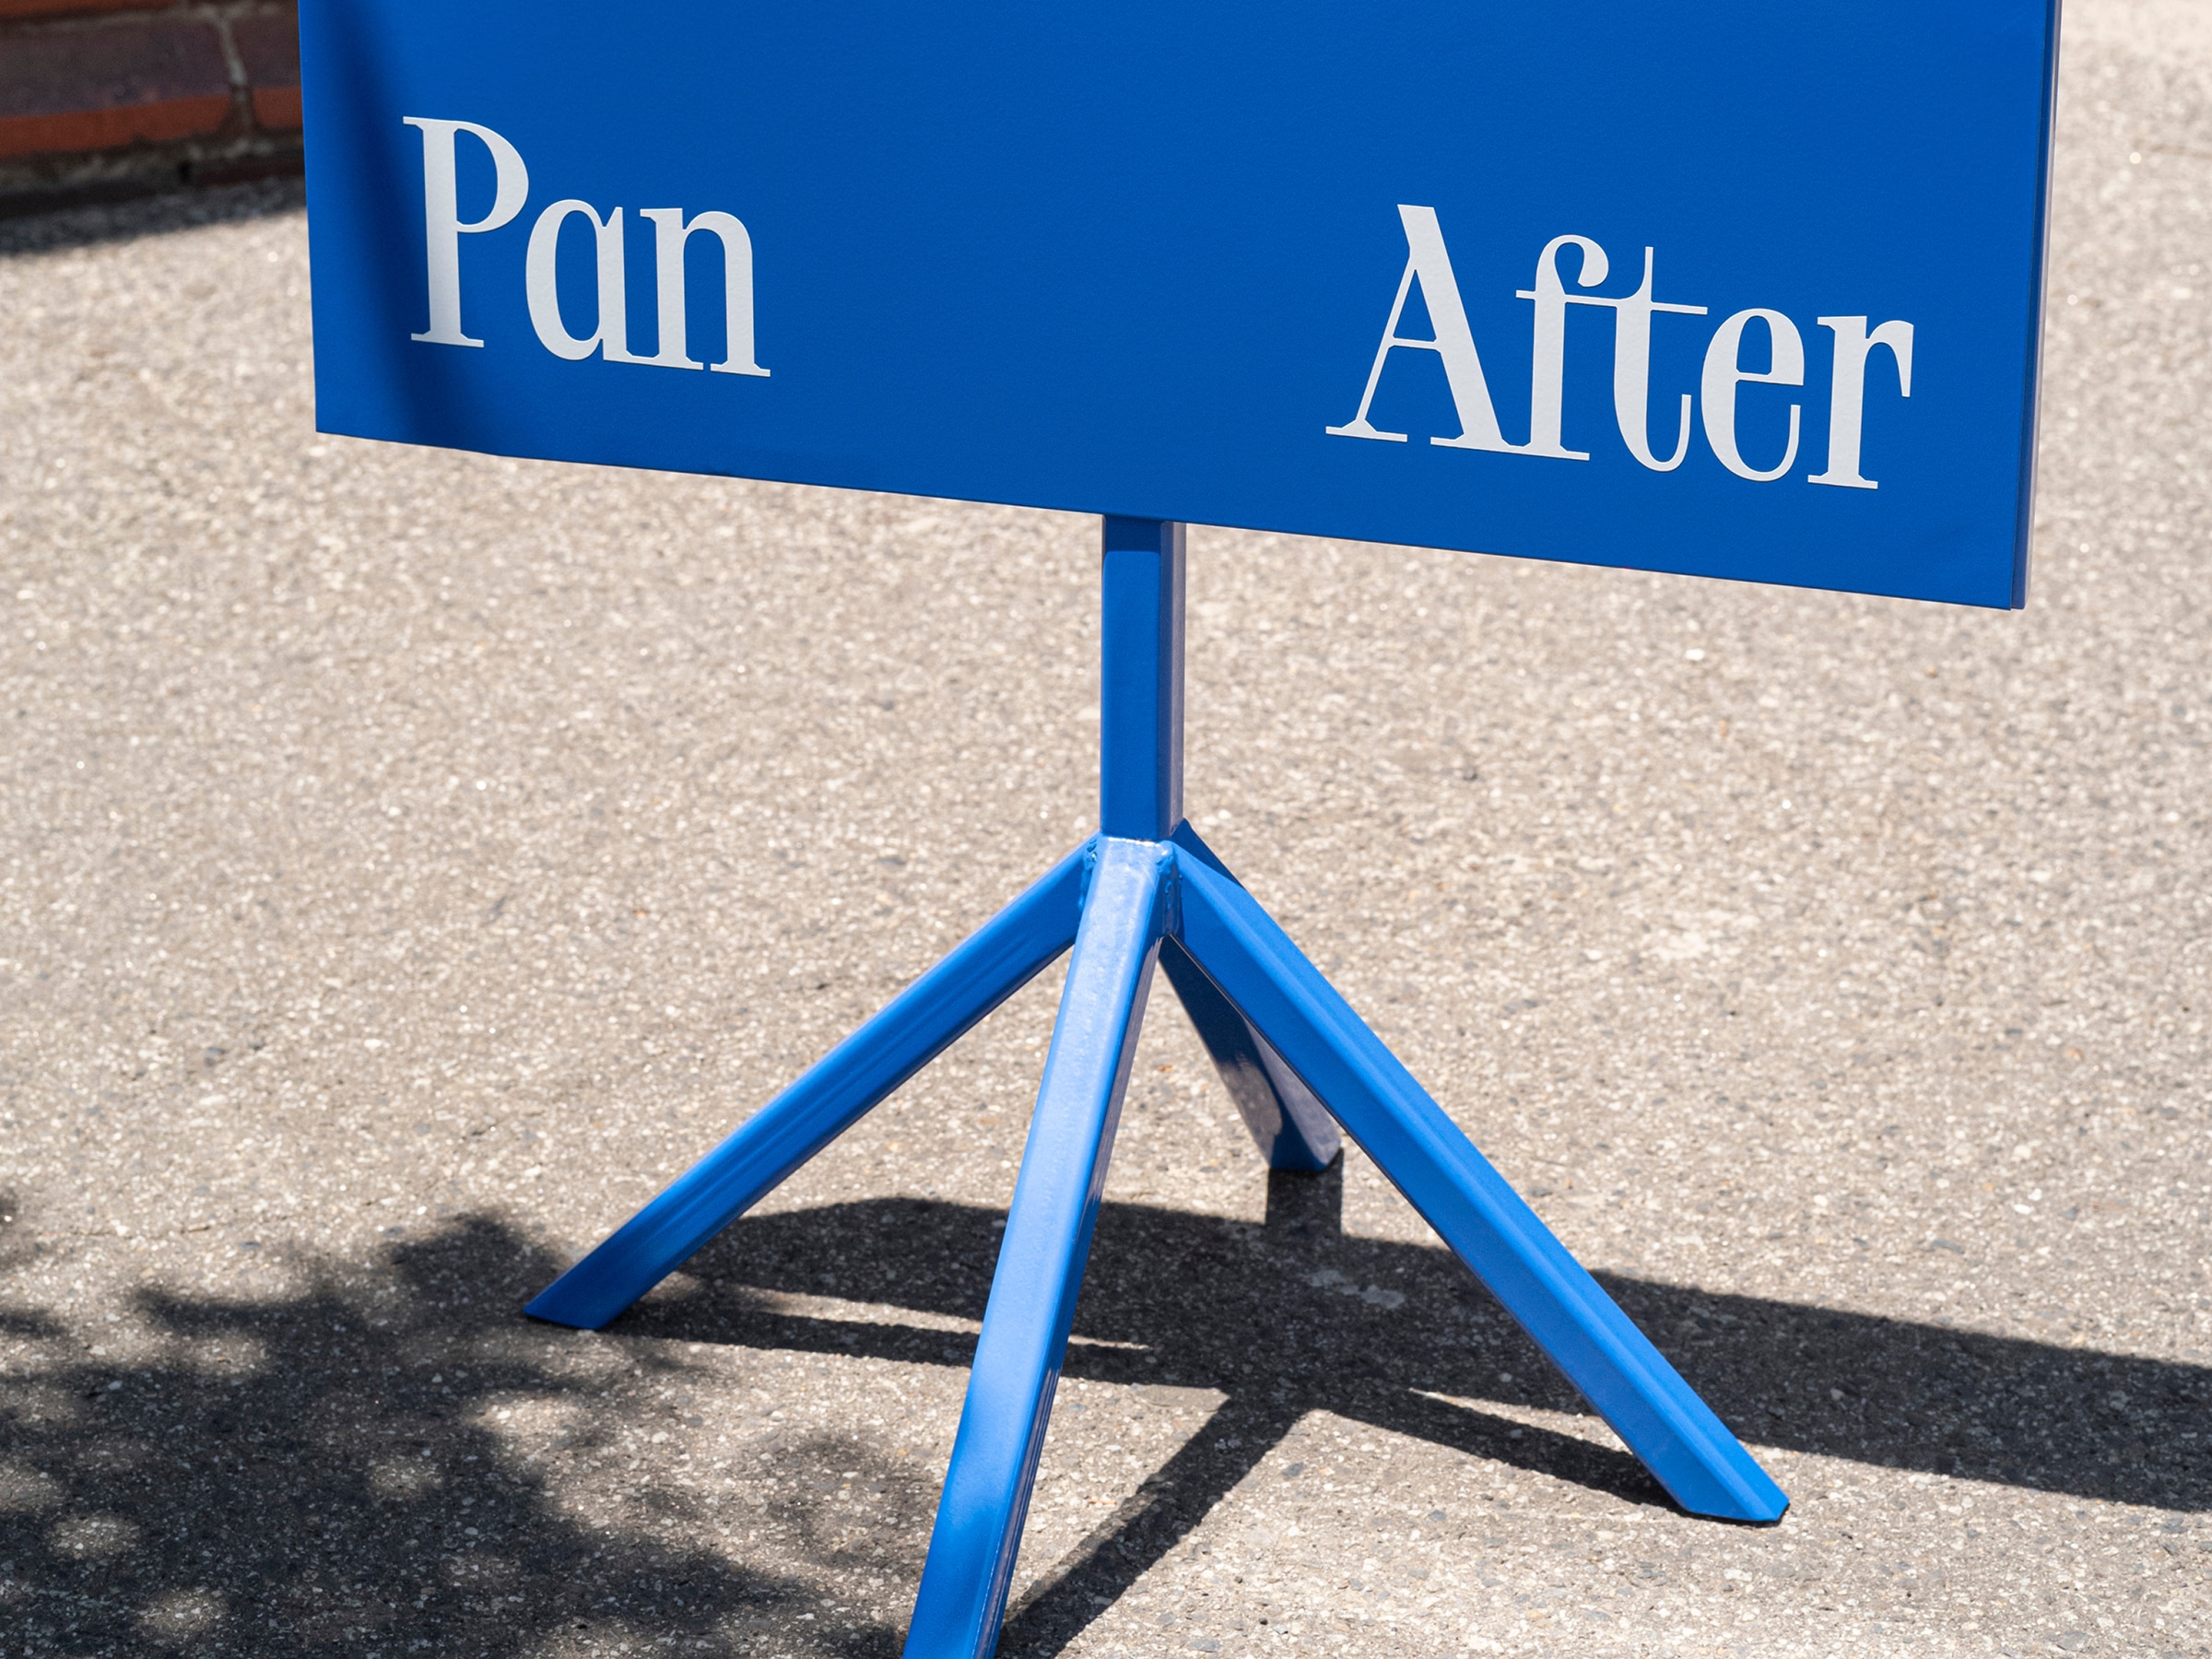 Pan After